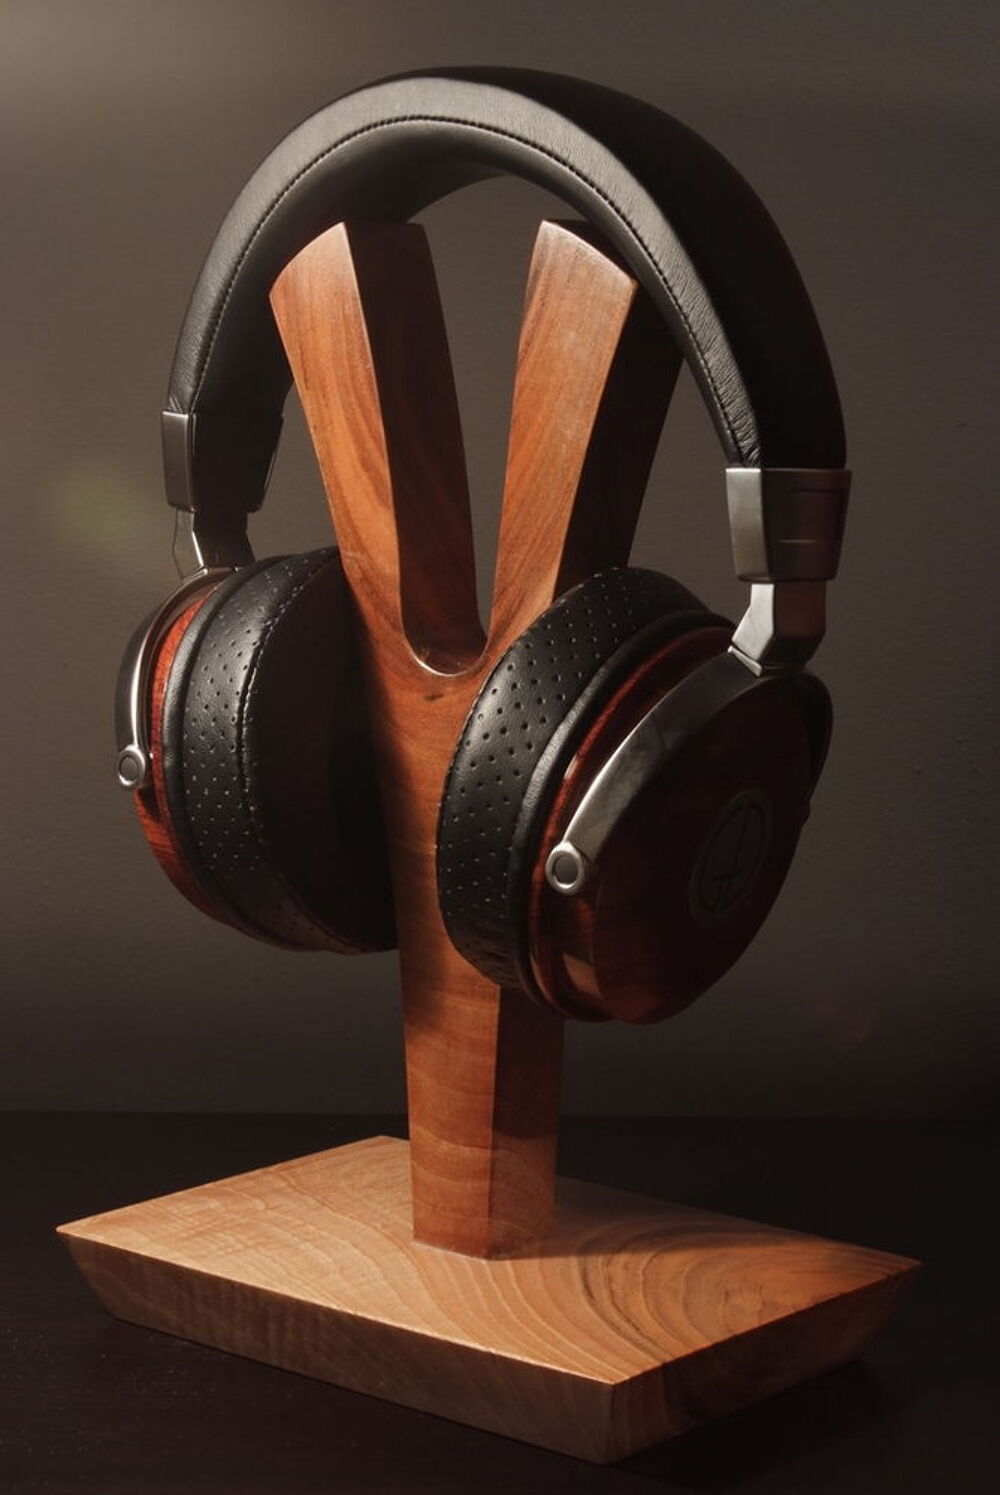 support de casque HIFI en bois massif 
Support de casque Audio et hifi